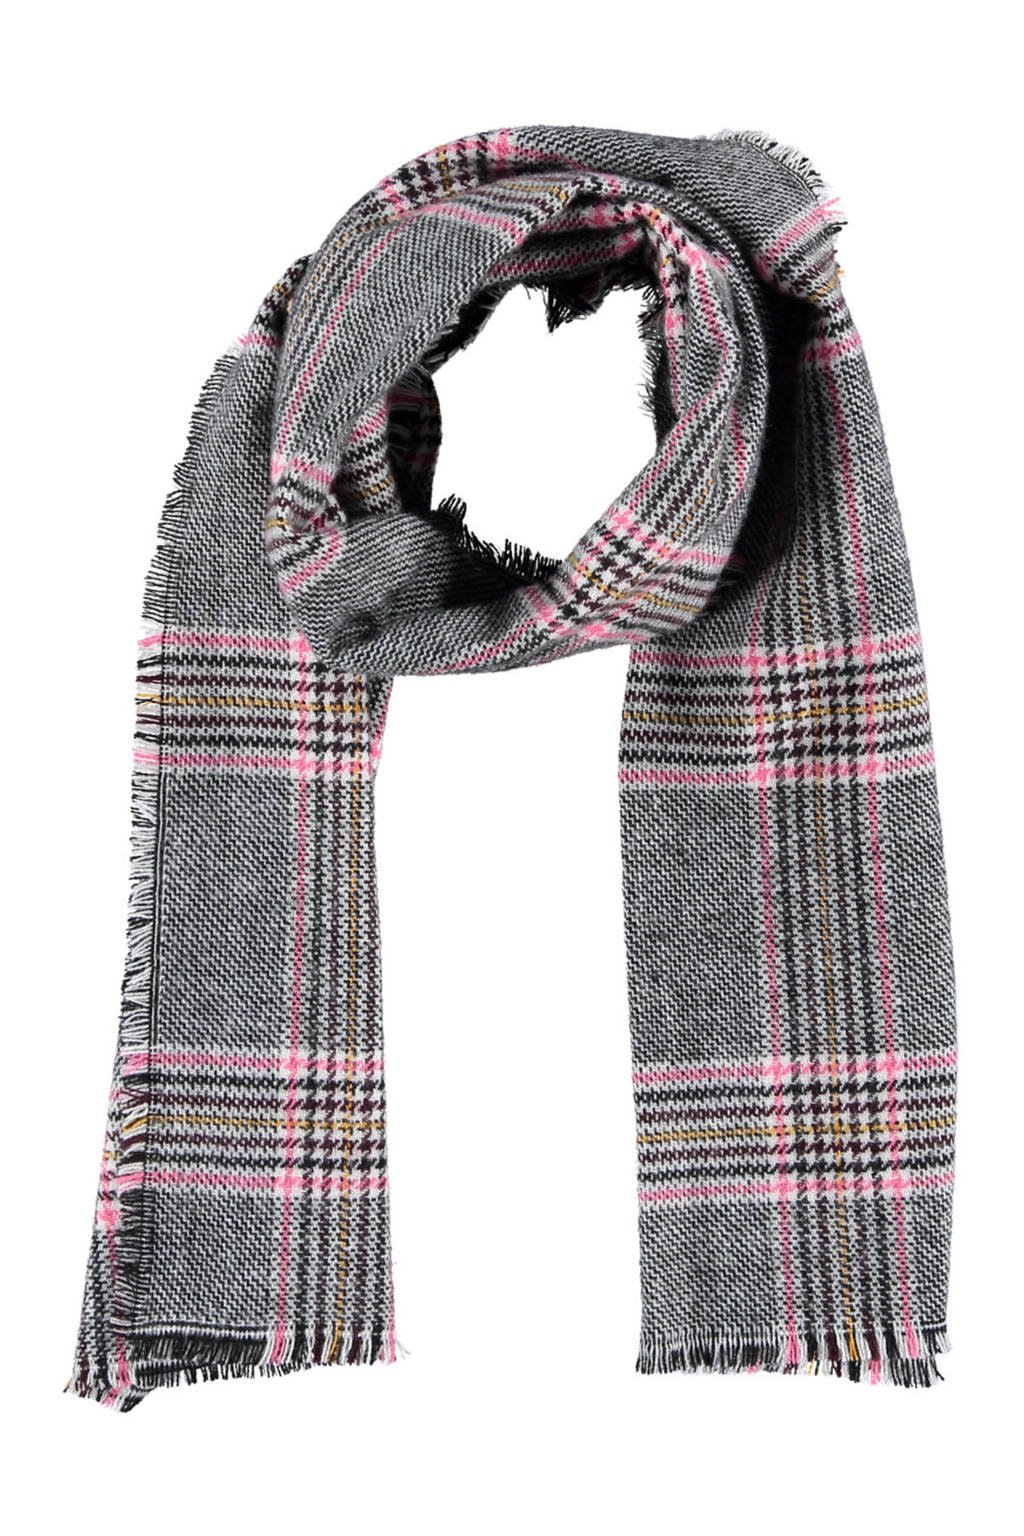 Sarlini sjaal met pied-de-poule print grijs/roze, Grijs/roze/geel